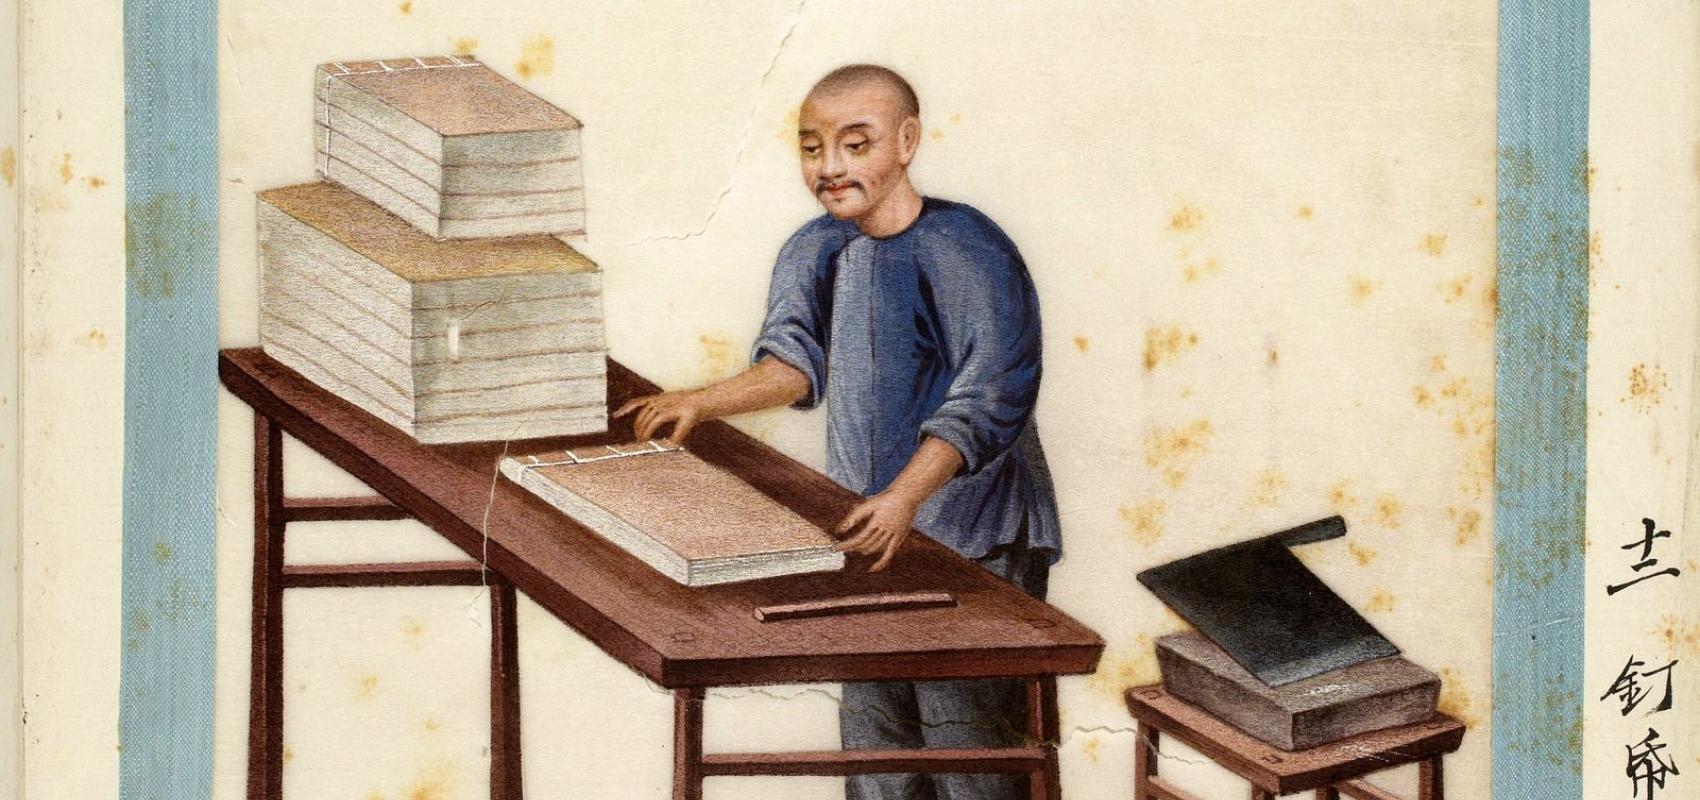 Papier. Fabrication, teinture et reliure, brochage des livres, dessin d'Yoeequa - Chine, début XIXe siècle - BnF, département des Estampes et de la photographie